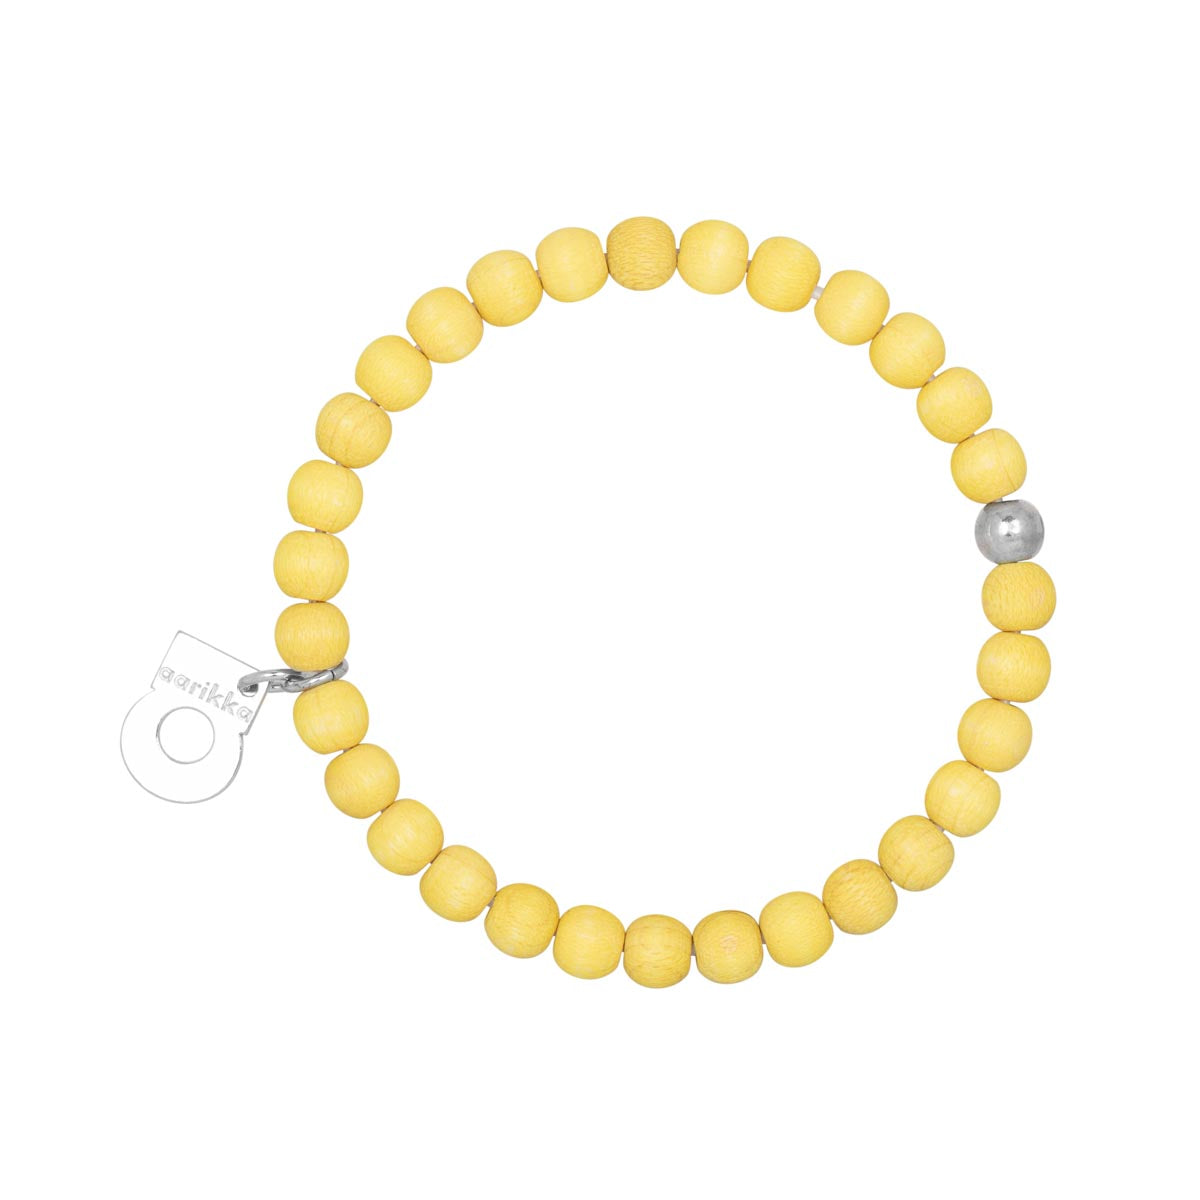 Herkkä bracelet, citron yellow